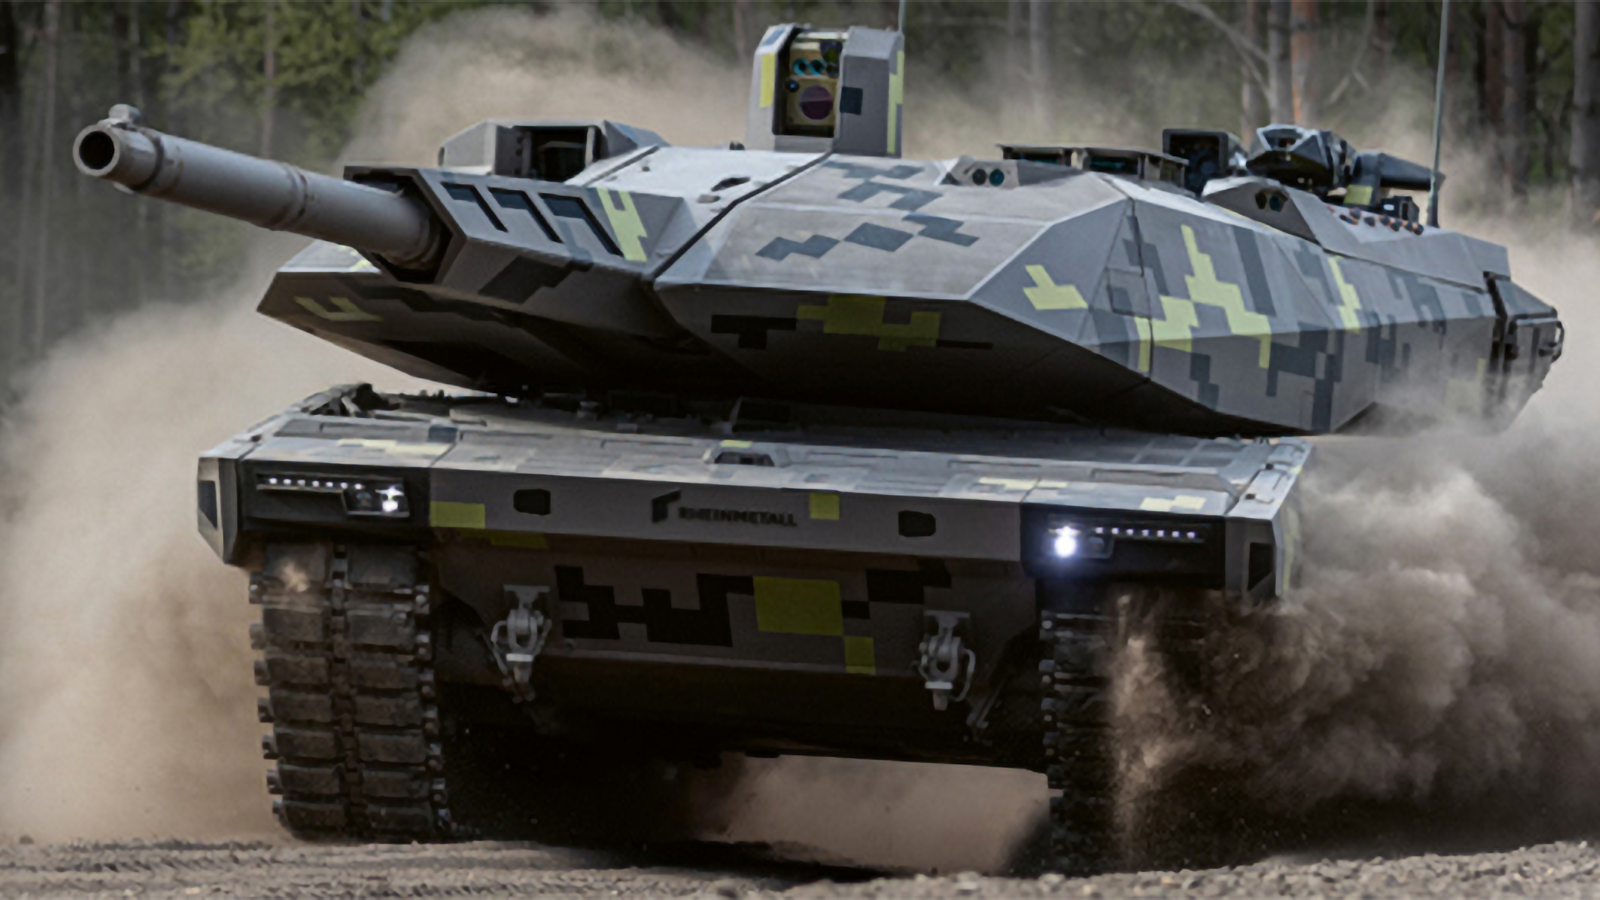 Xe tăng Panther của Đức có gì đặc biệt so với Abrams của Mỹ? - Ảnh 1.